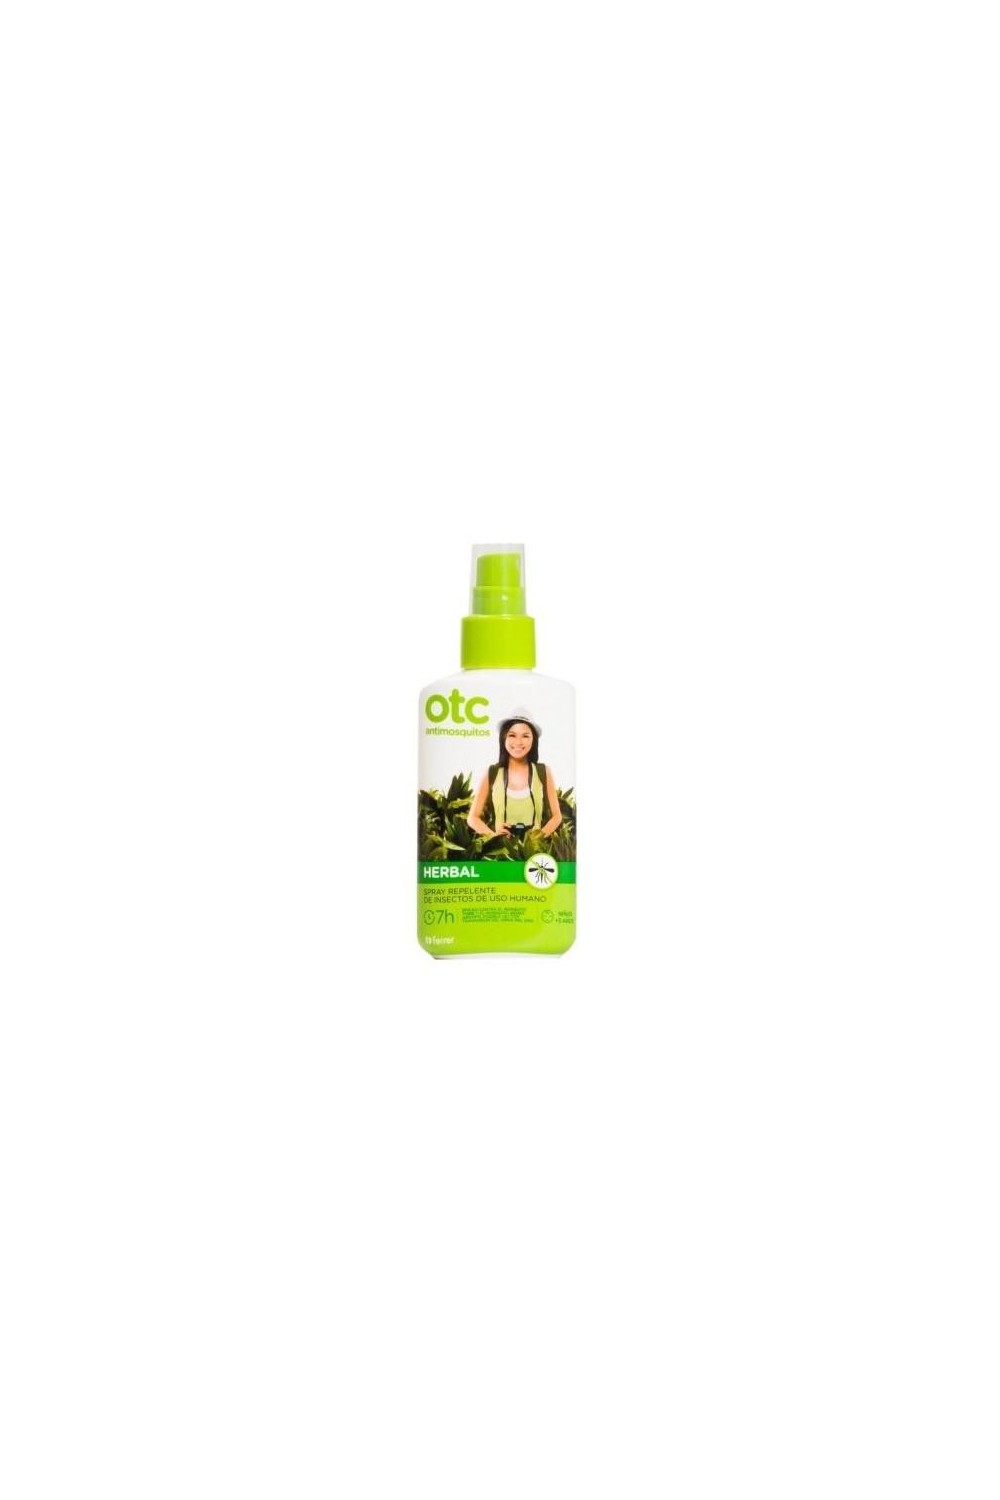 Otc Antimosquitos Herbal Spray 100ml